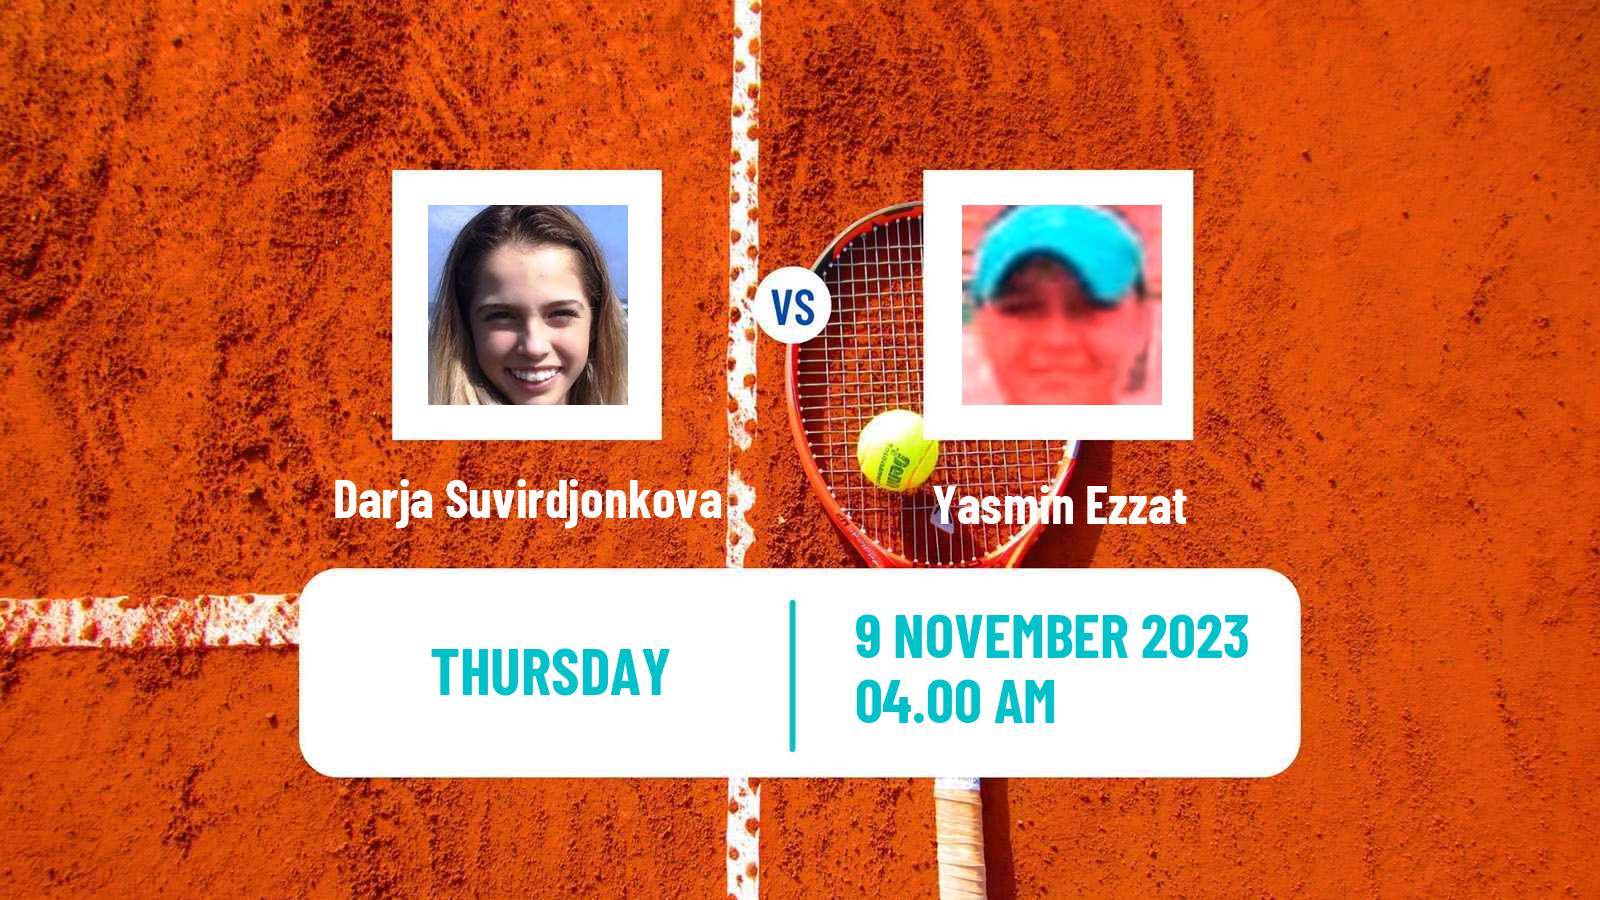 Tennis ITF W15 Sharm Elsheikh 17 Women Darja Suvirdjonkova - Yasmin Ezzat